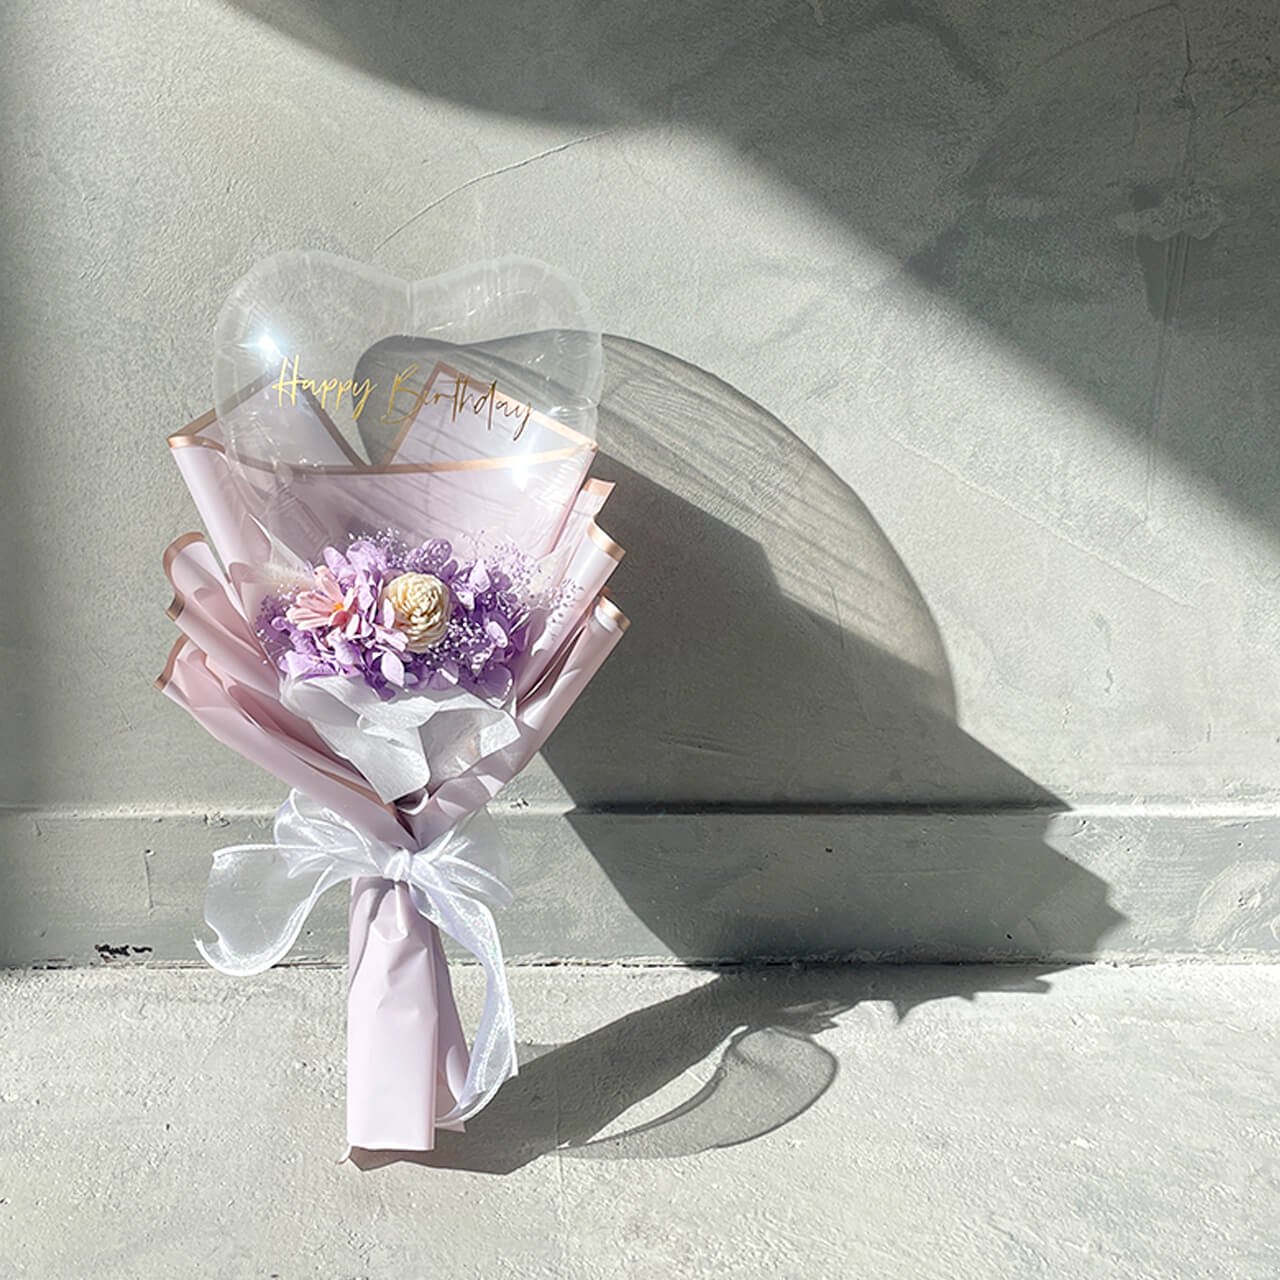 Charis Bouquet Purple - フラワーバルーンブーケ - 各種お祝いや卒業や入学のお祝いにギフトバルーン - チャビーバルーン 大阪  名古屋 滋賀にあるおしゃれなバルーン電報 バルーン装飾 バルーンギフトのことならチャビーバルーン